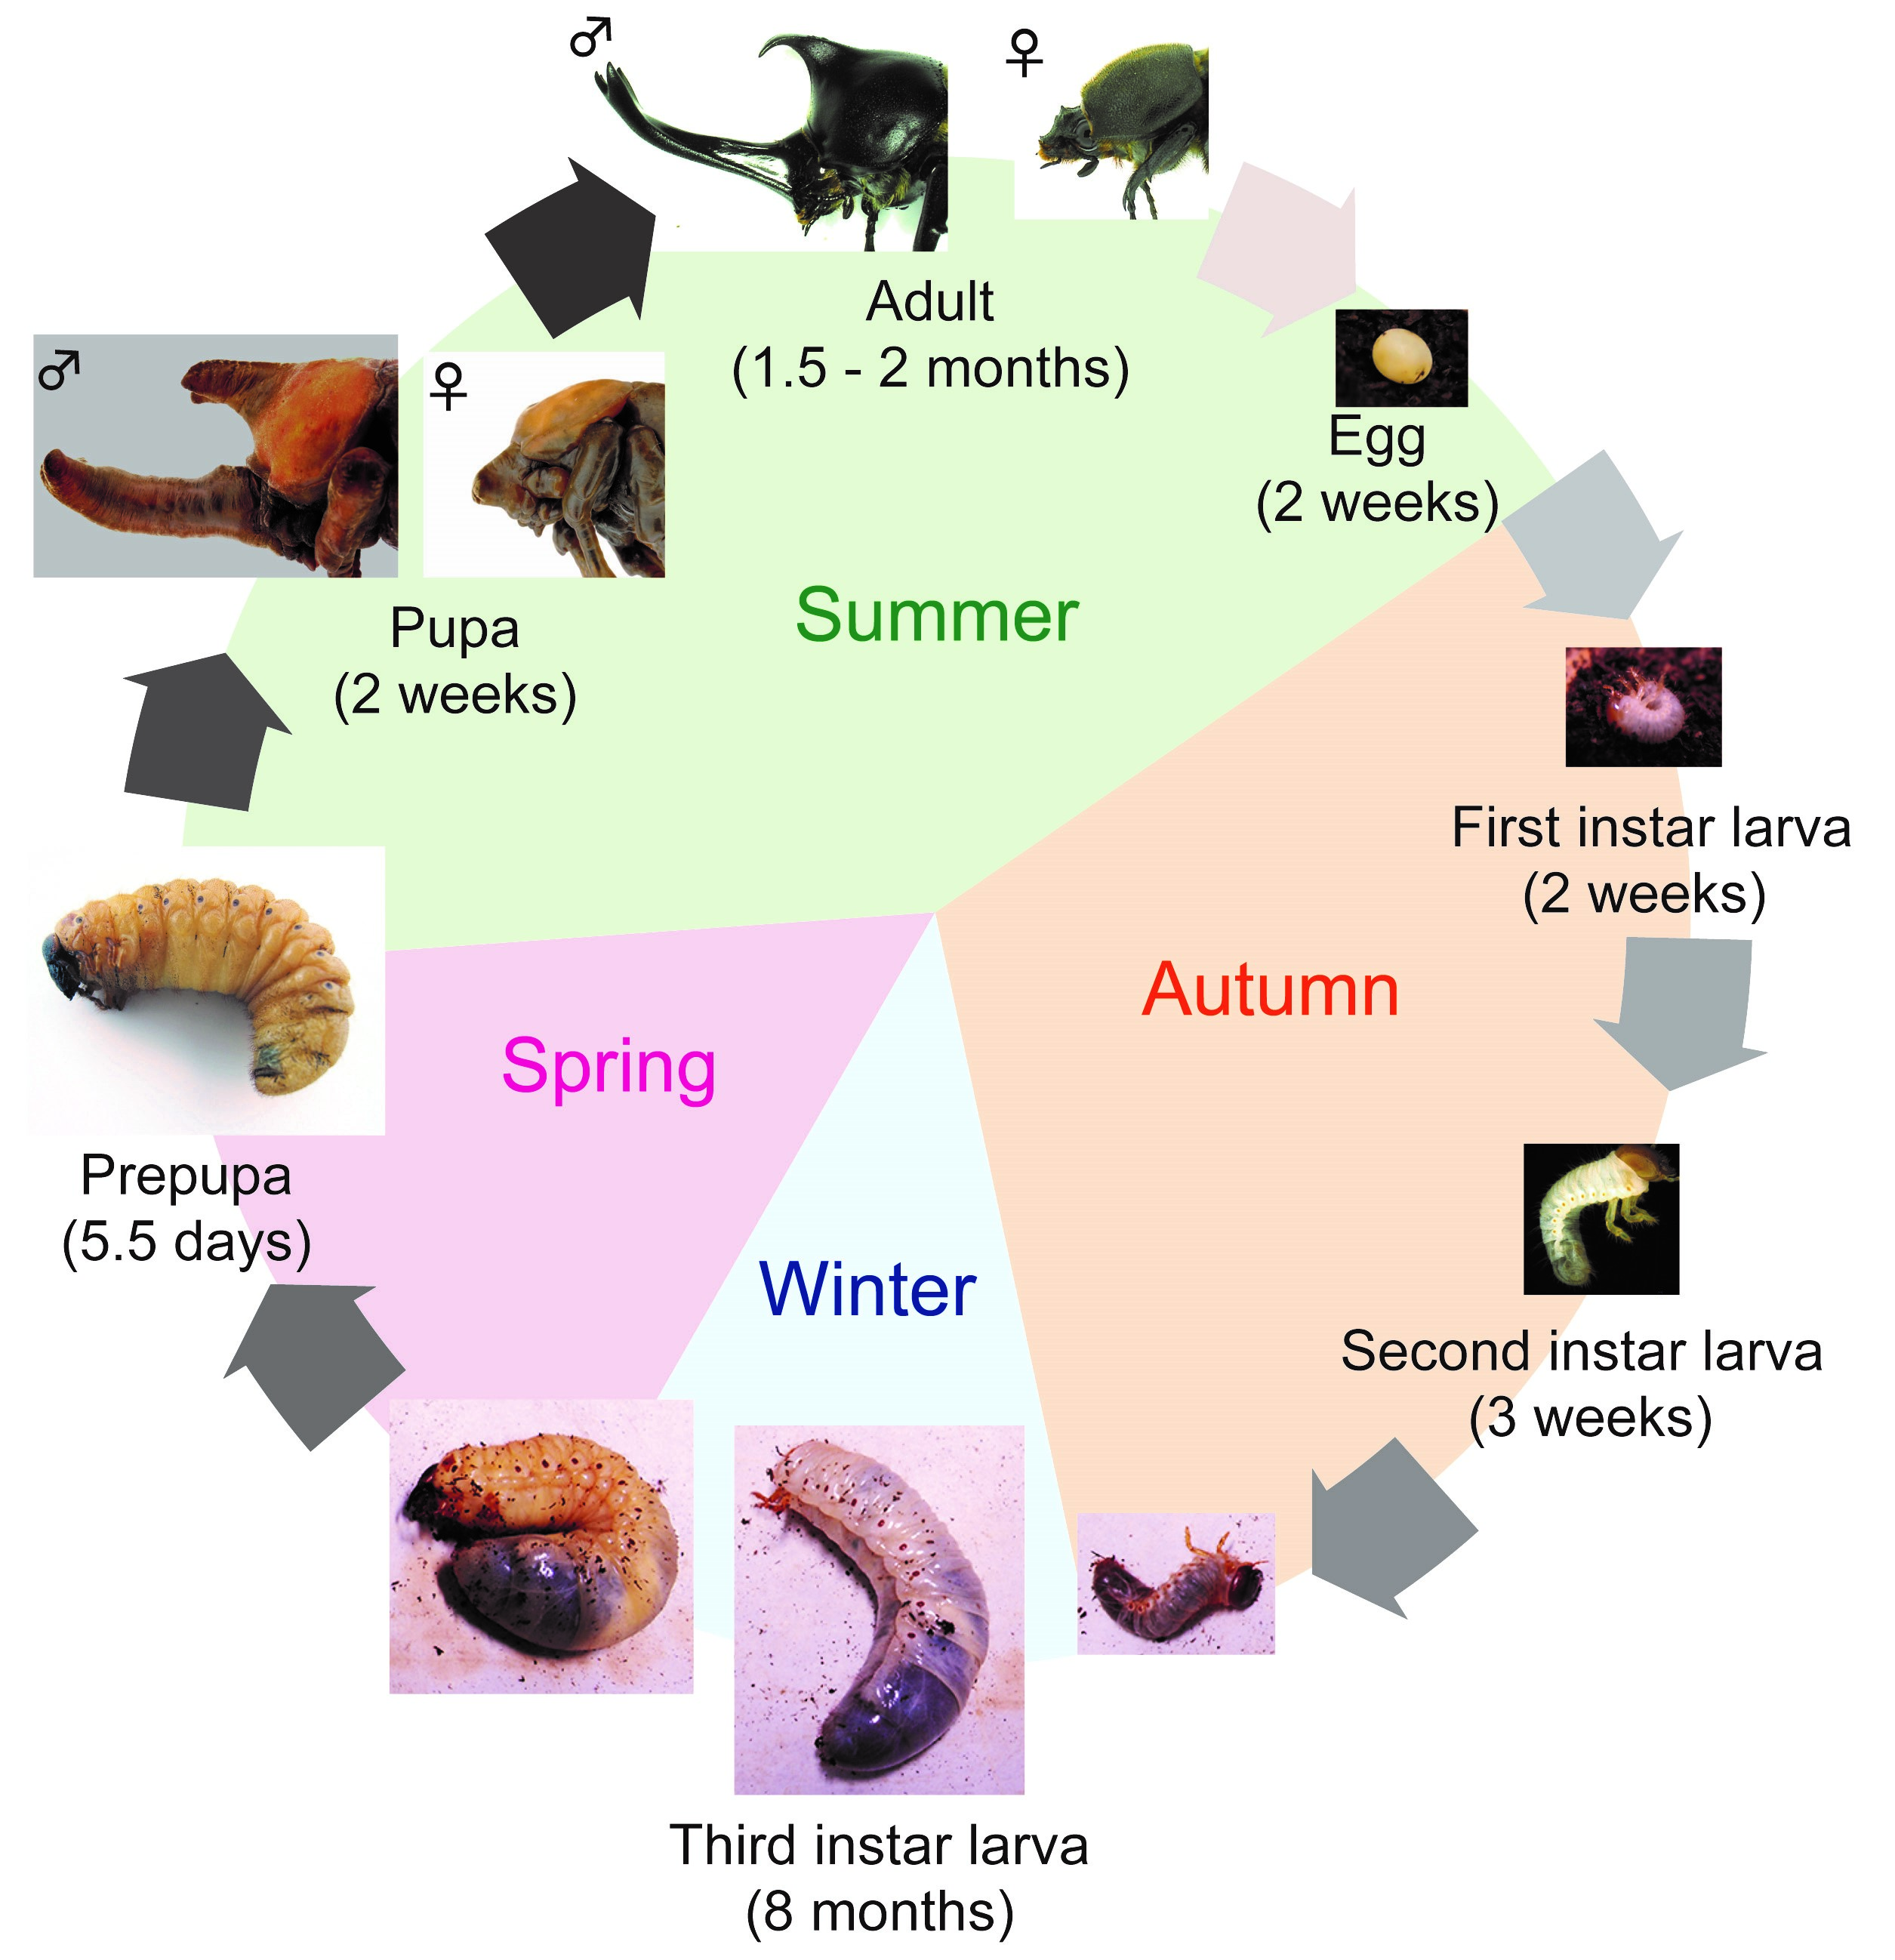 rhino beetle life cycle